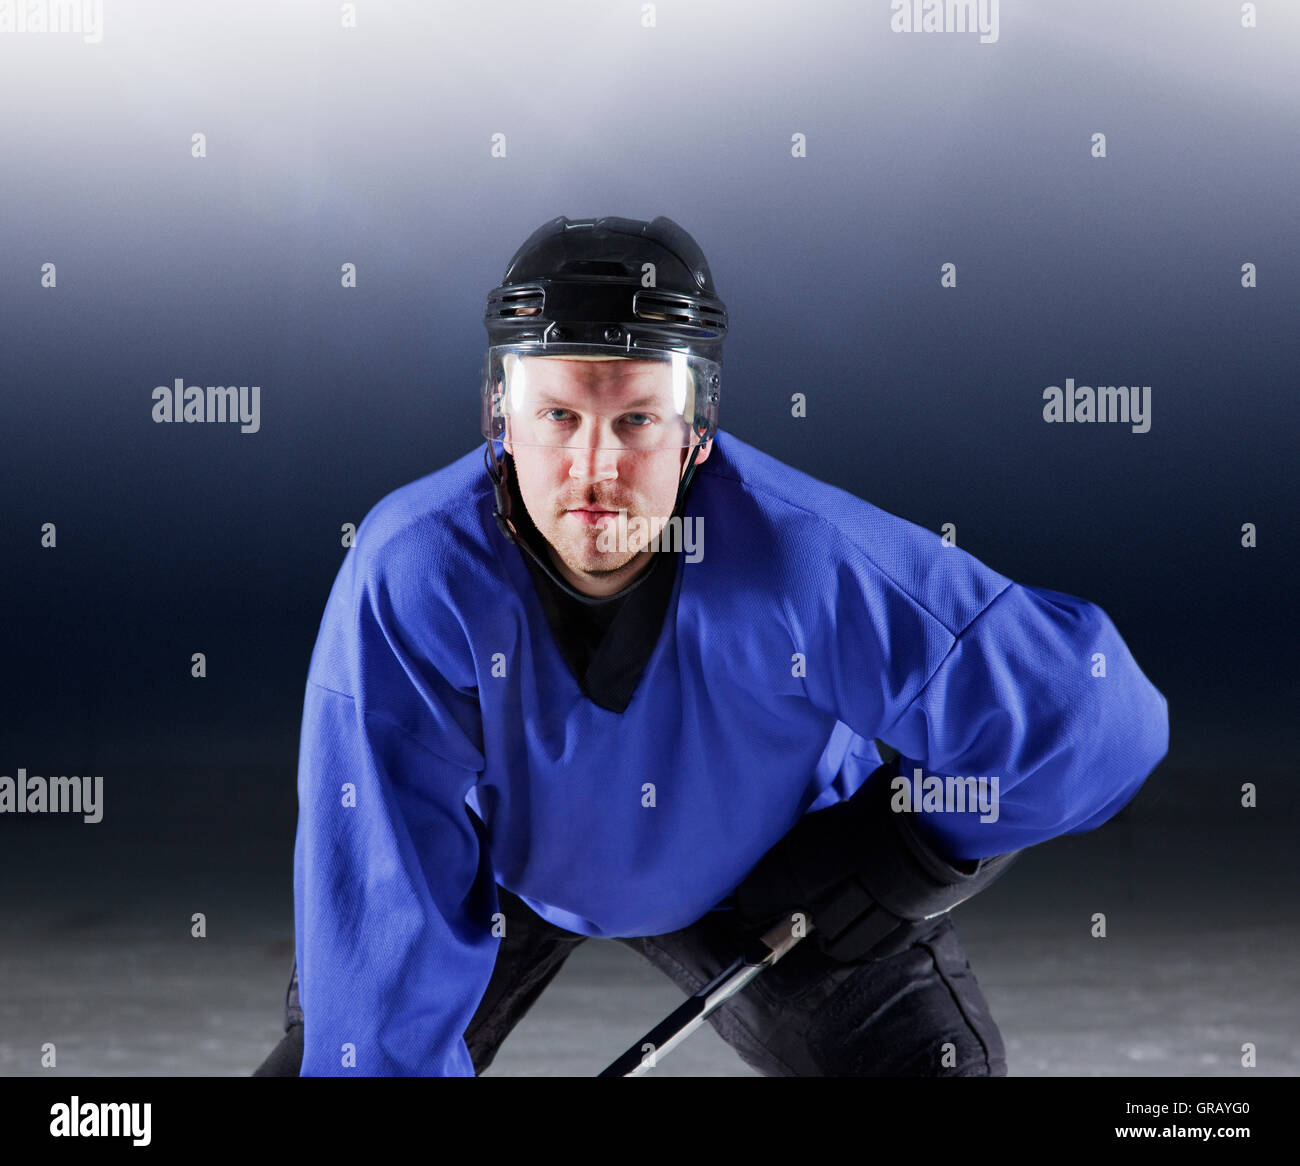 Portrait déterminé le joueur de hockey sur glace en uniforme bleu Banque D'Images